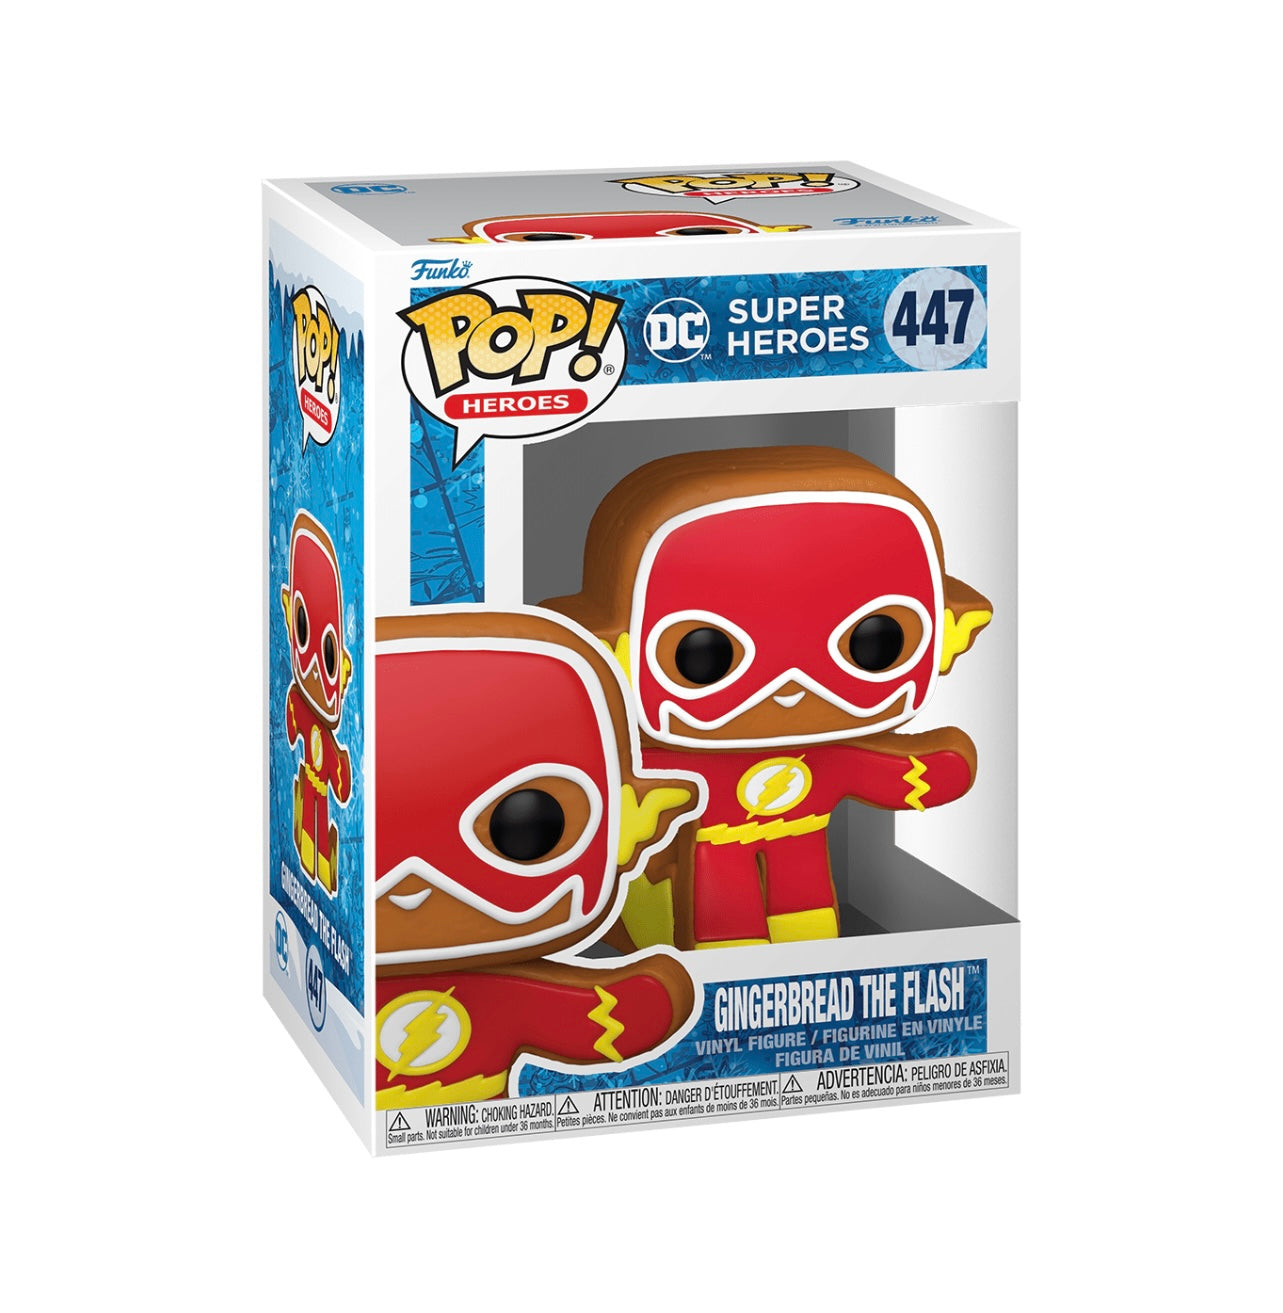 POP! Heroes Gingerbread Flash #447